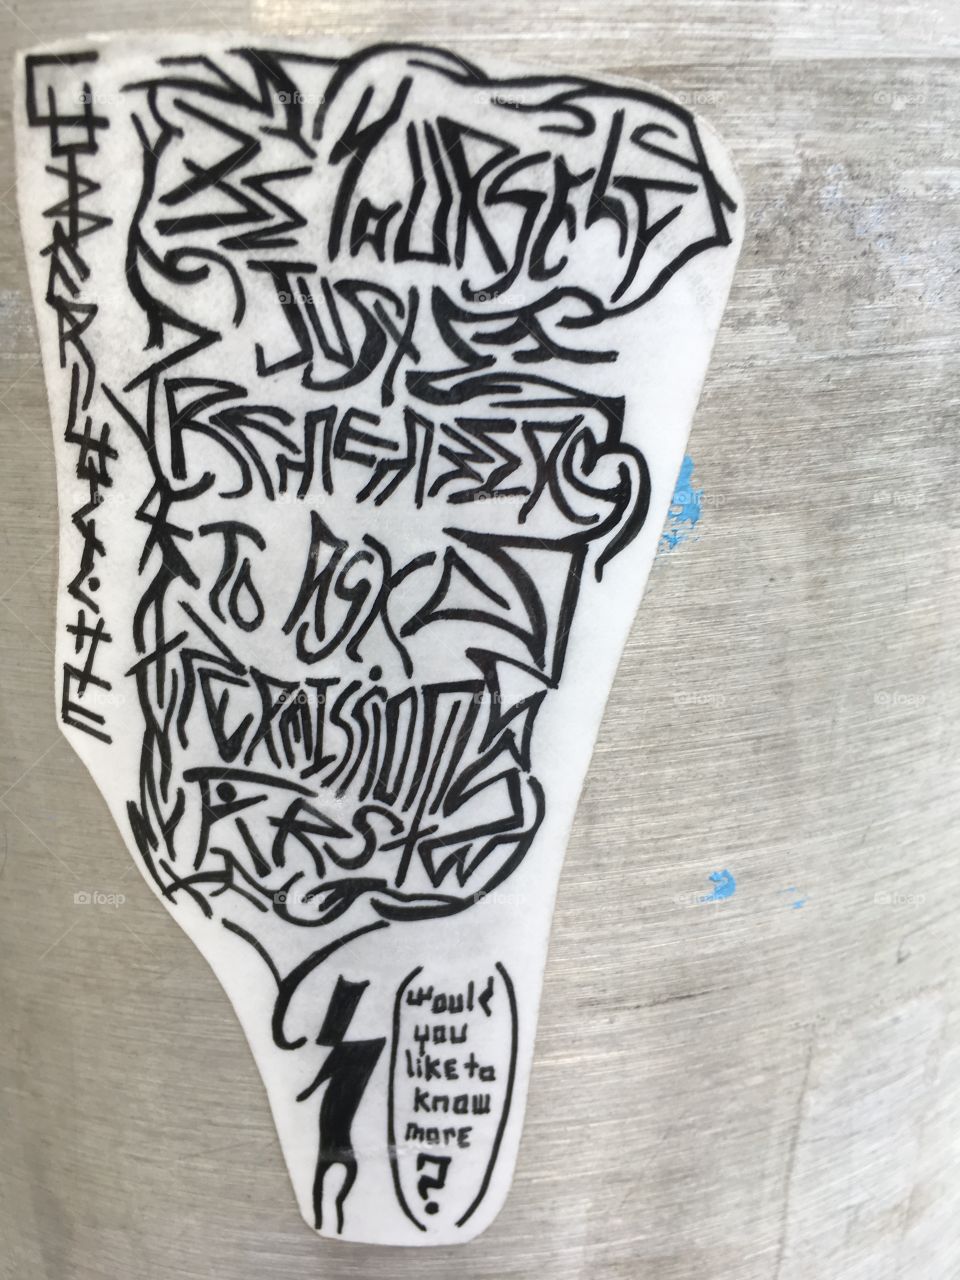 Important message in lamp post...graffiti in Cambridge 